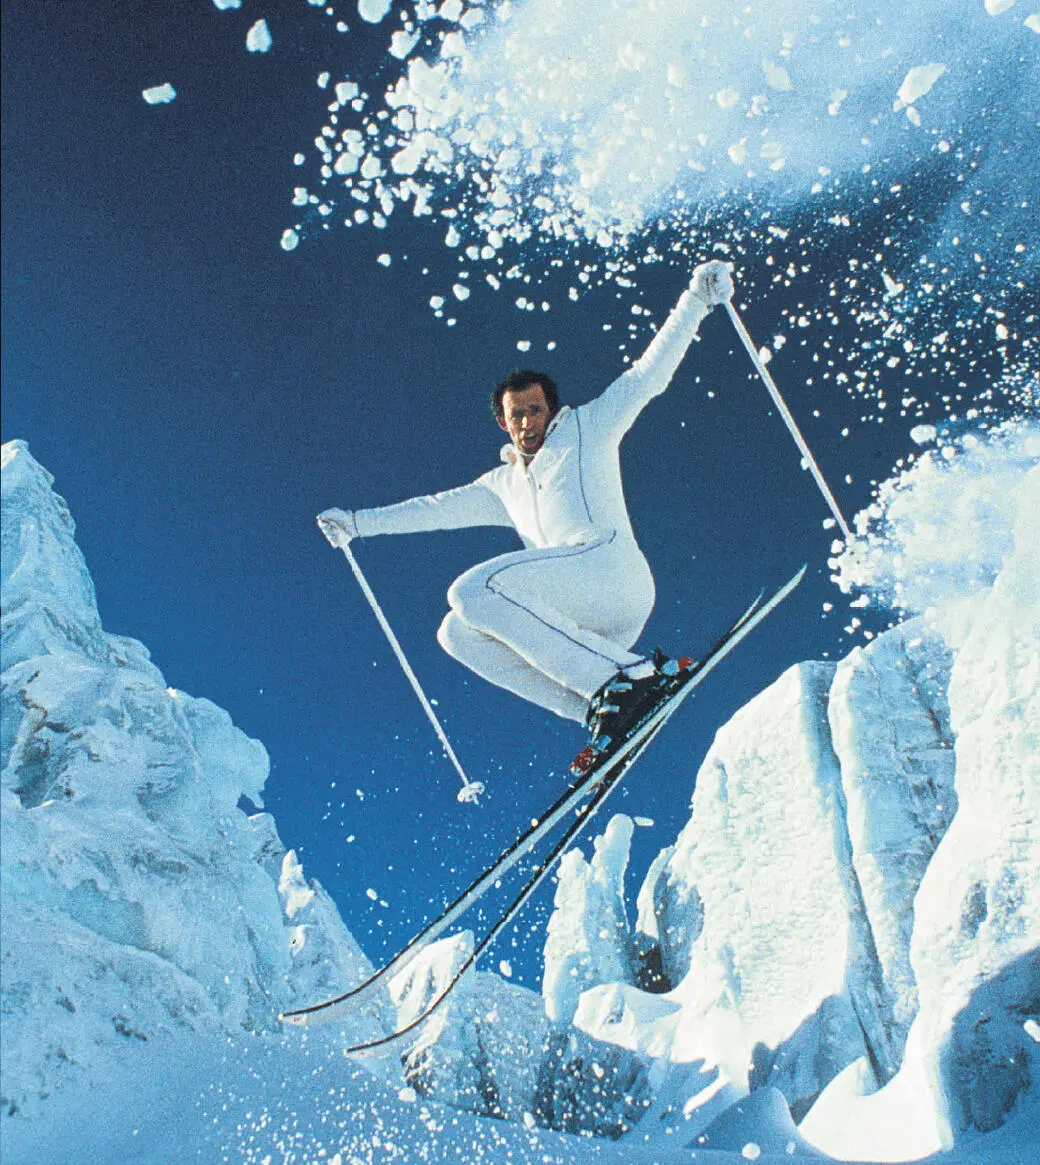 Pure Freiheit Willy Bogner am Piz Palü im Jahr 1973 Kameramann auf Skiern - фото 6